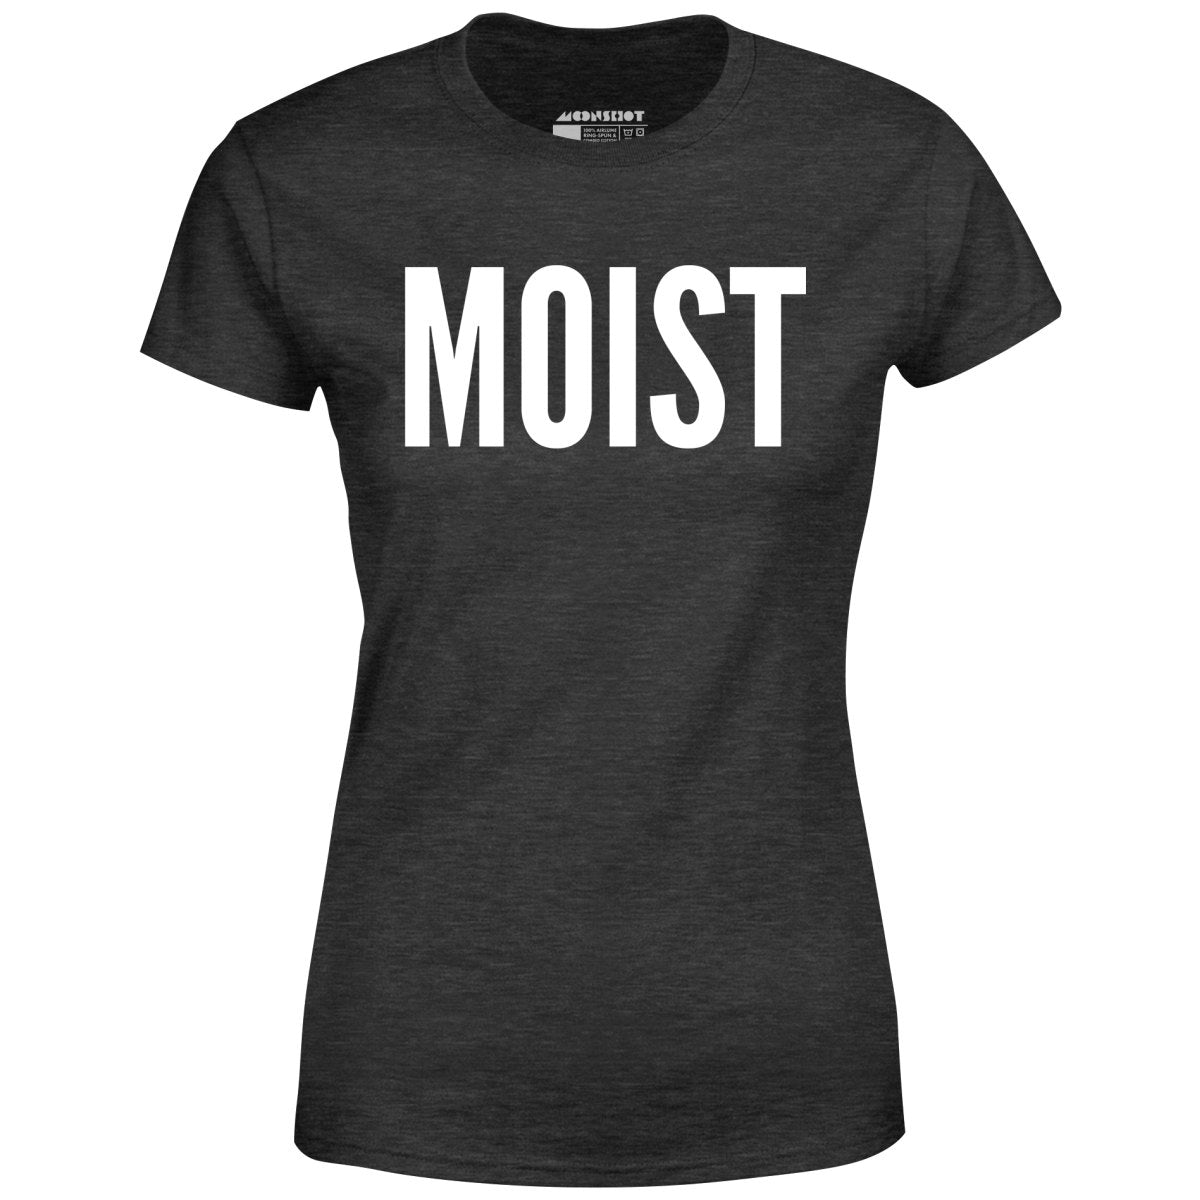 Moist - Women's T-Shirt